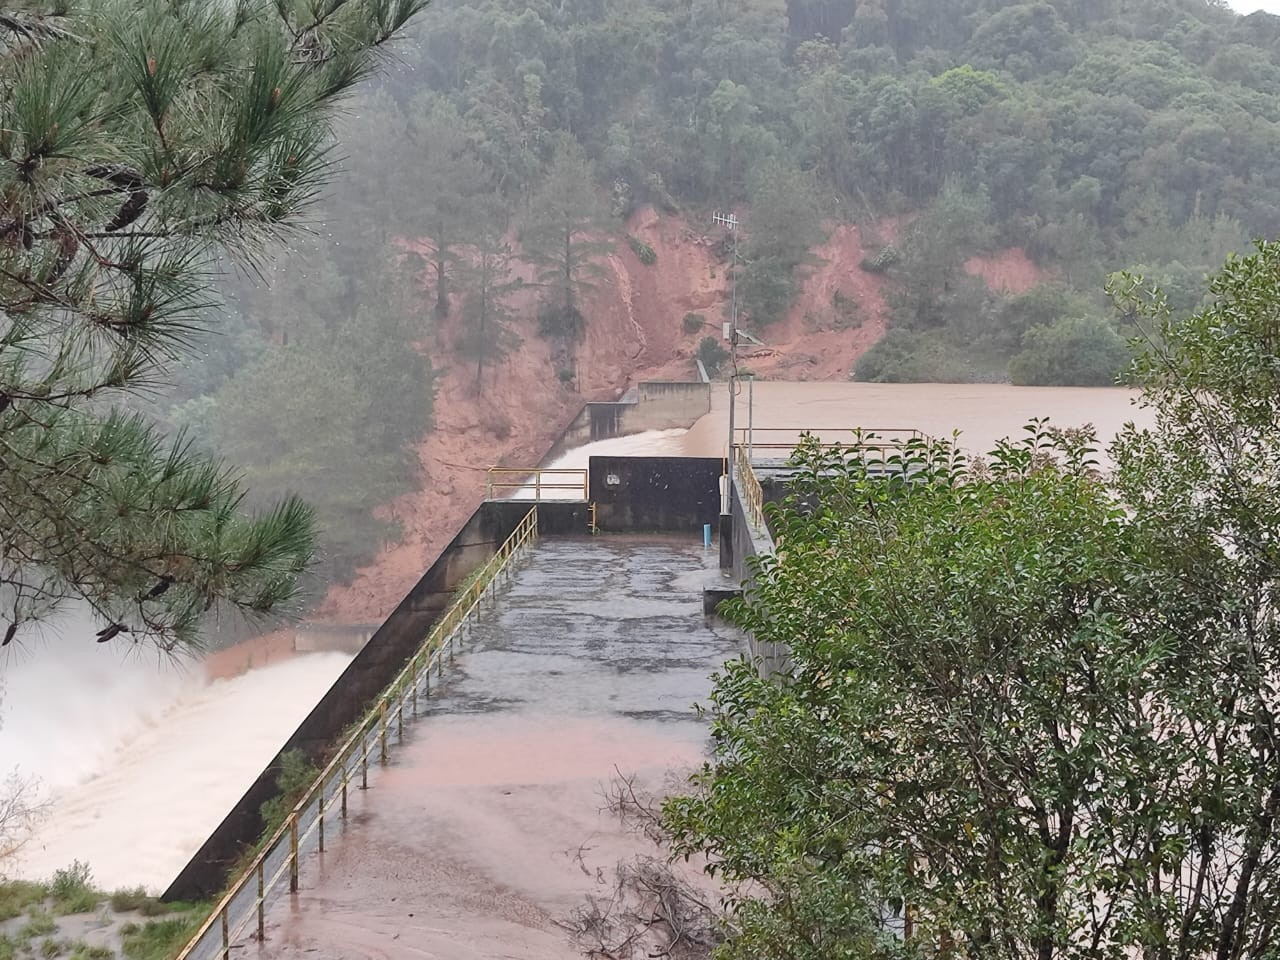 Companhia decreta emergência após risco de barragem extravasar em Bento Gonçalves